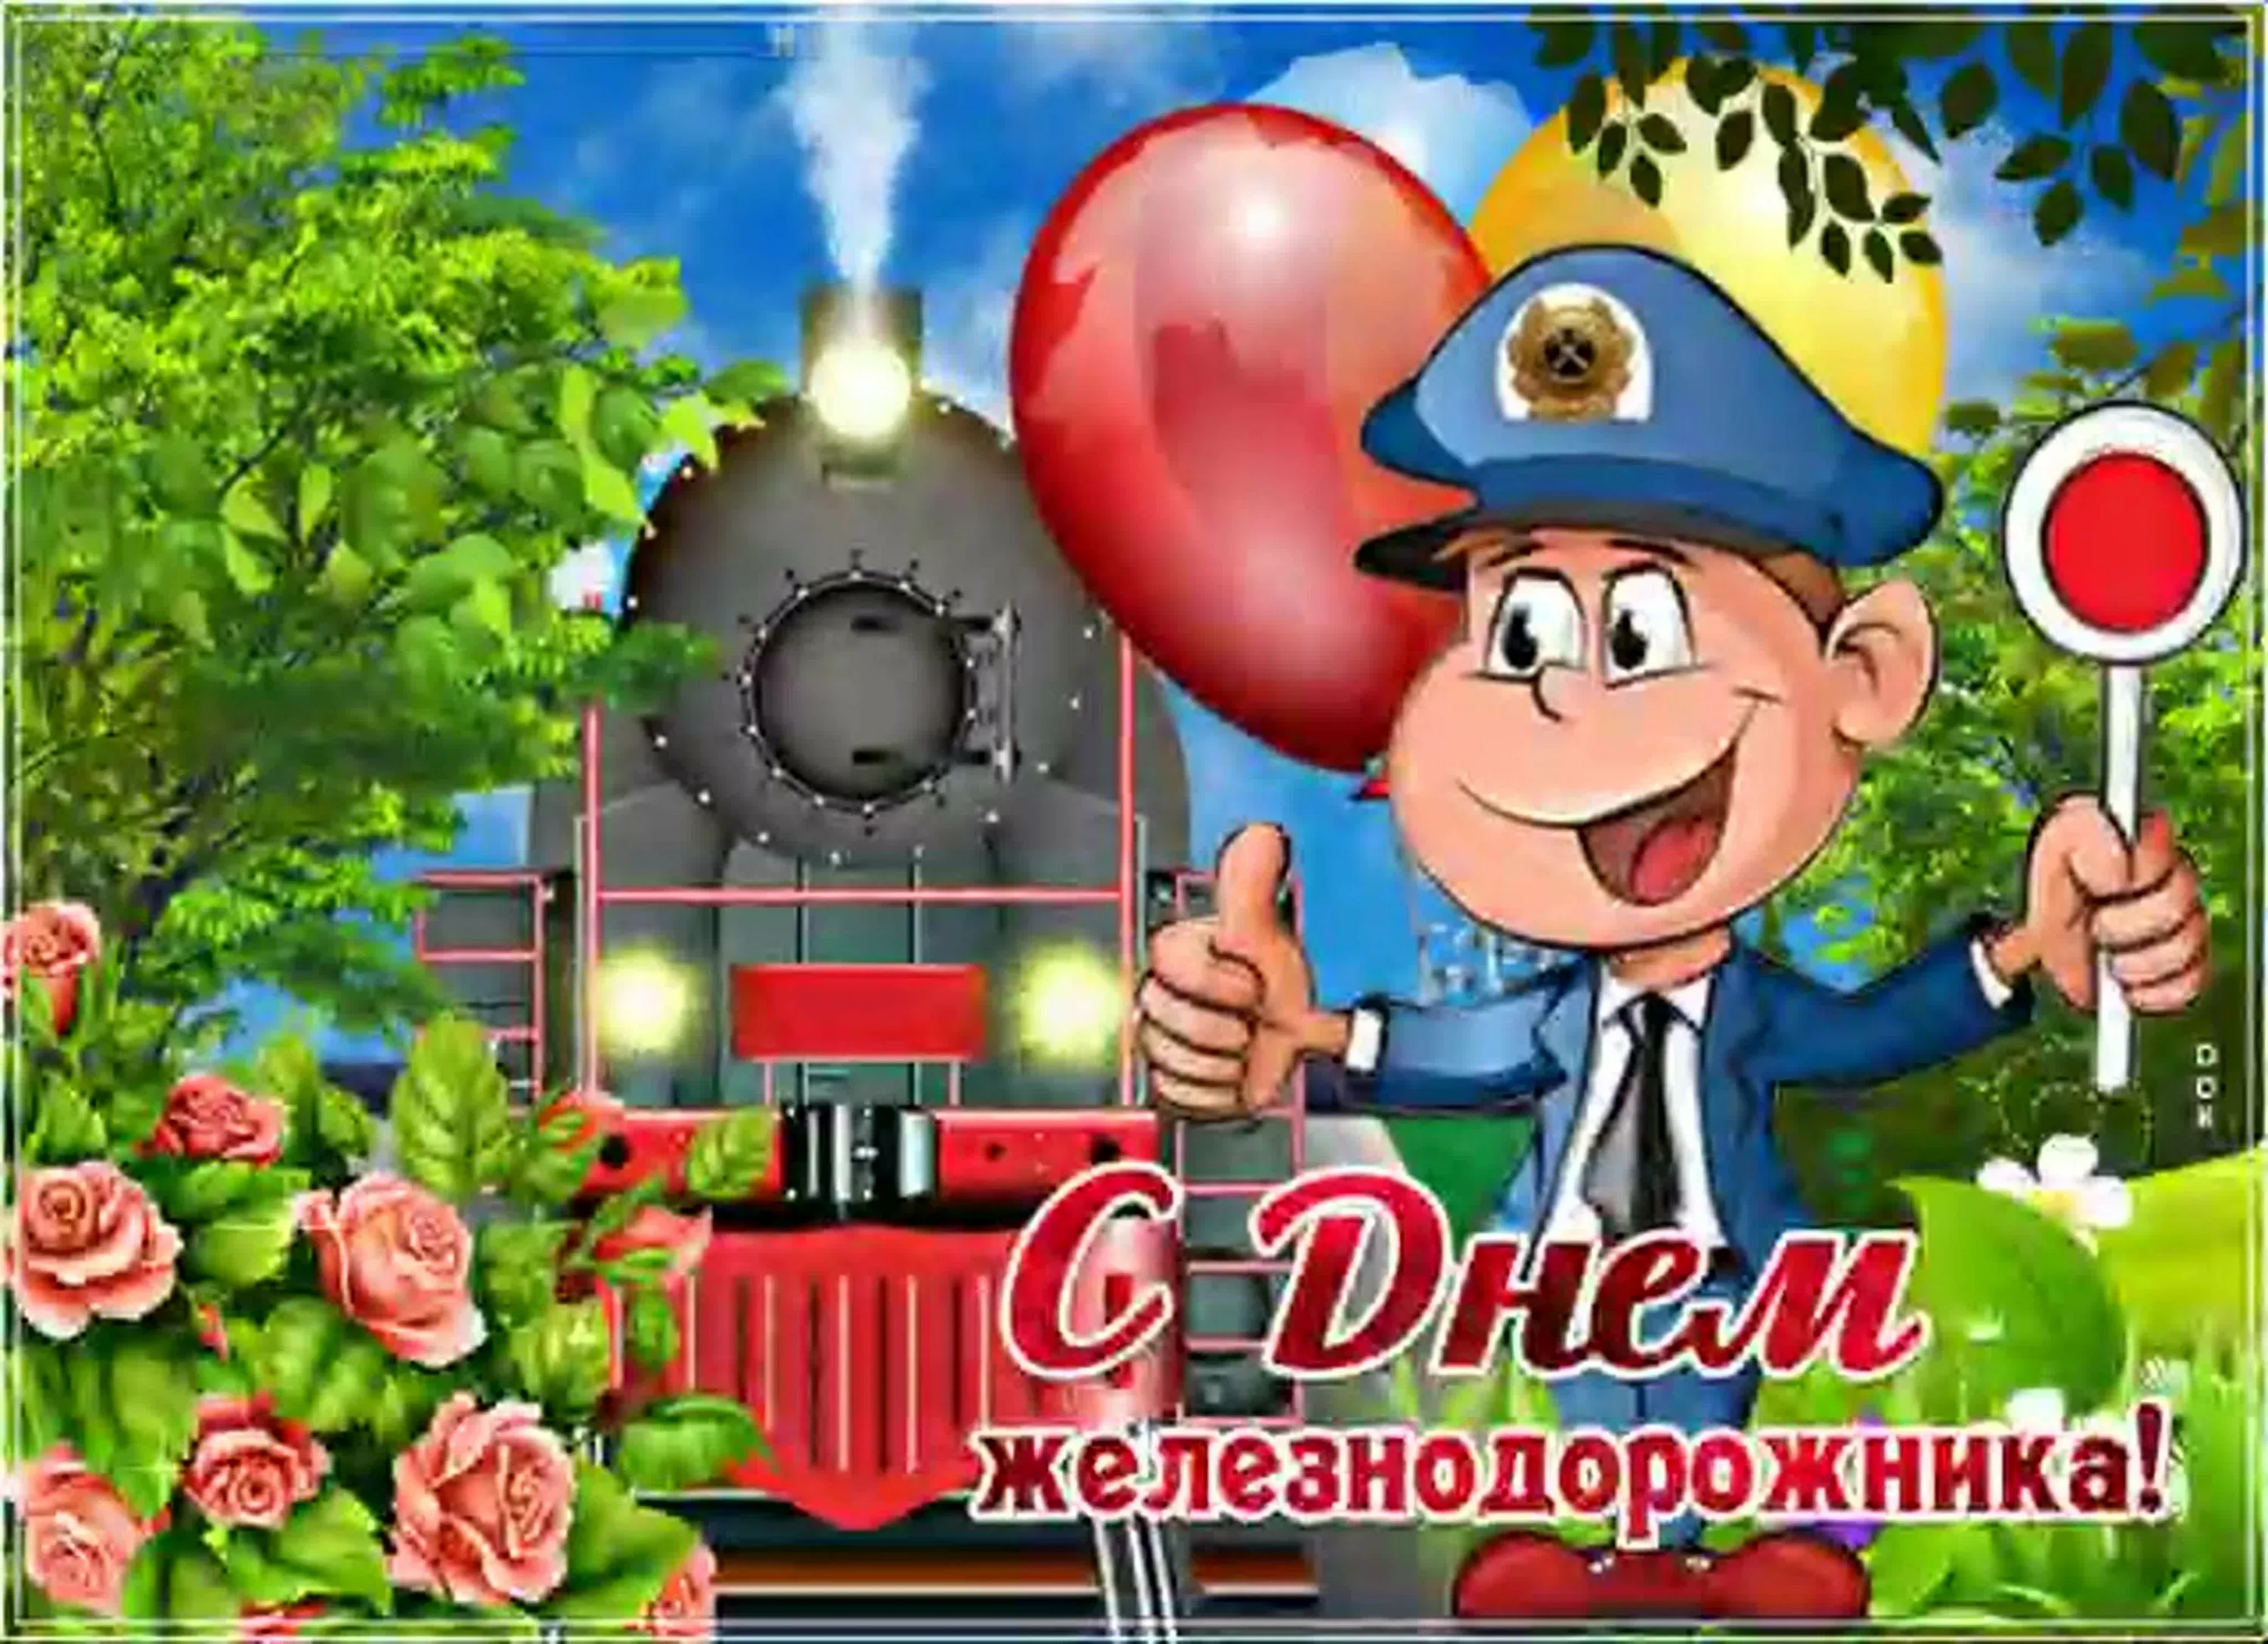 Фото Поздравление с днем железнодорожника Украины #51